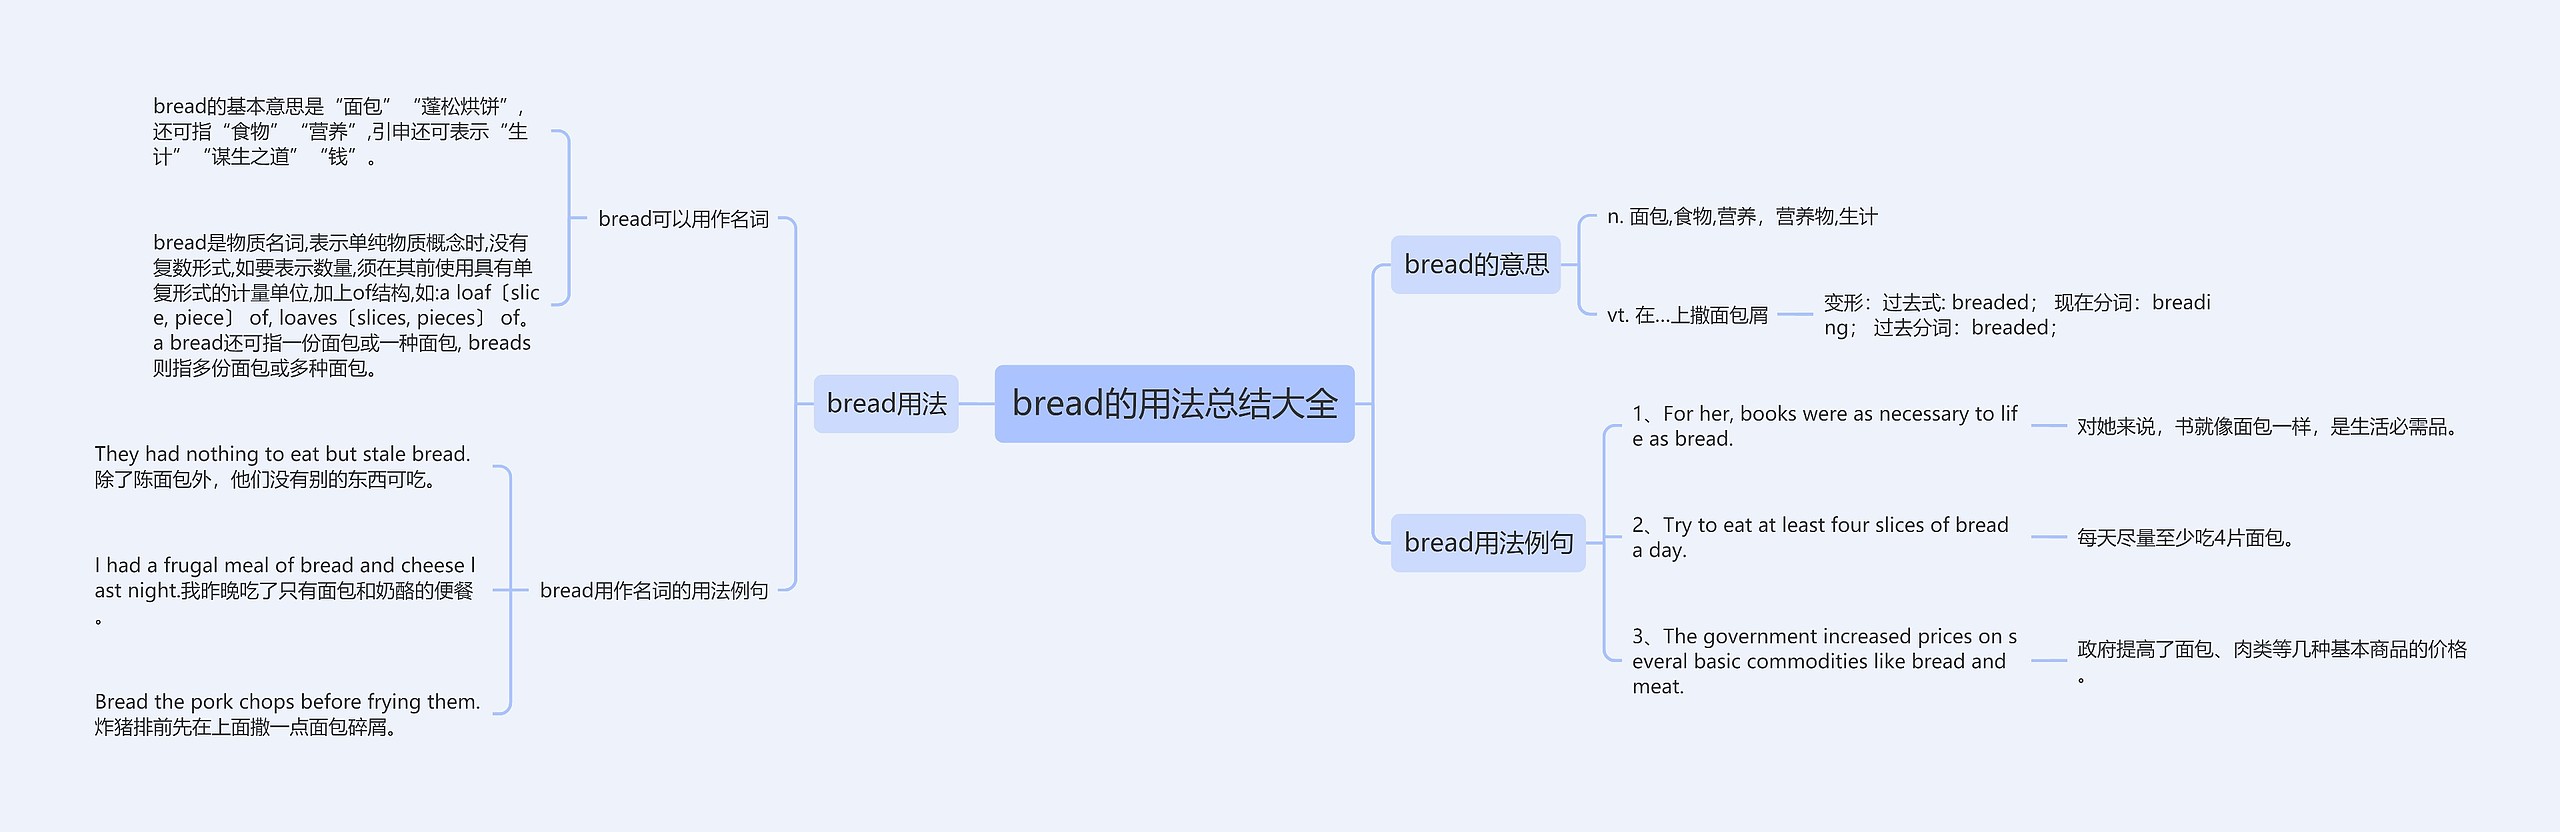 bread的用法总结大全思维导图